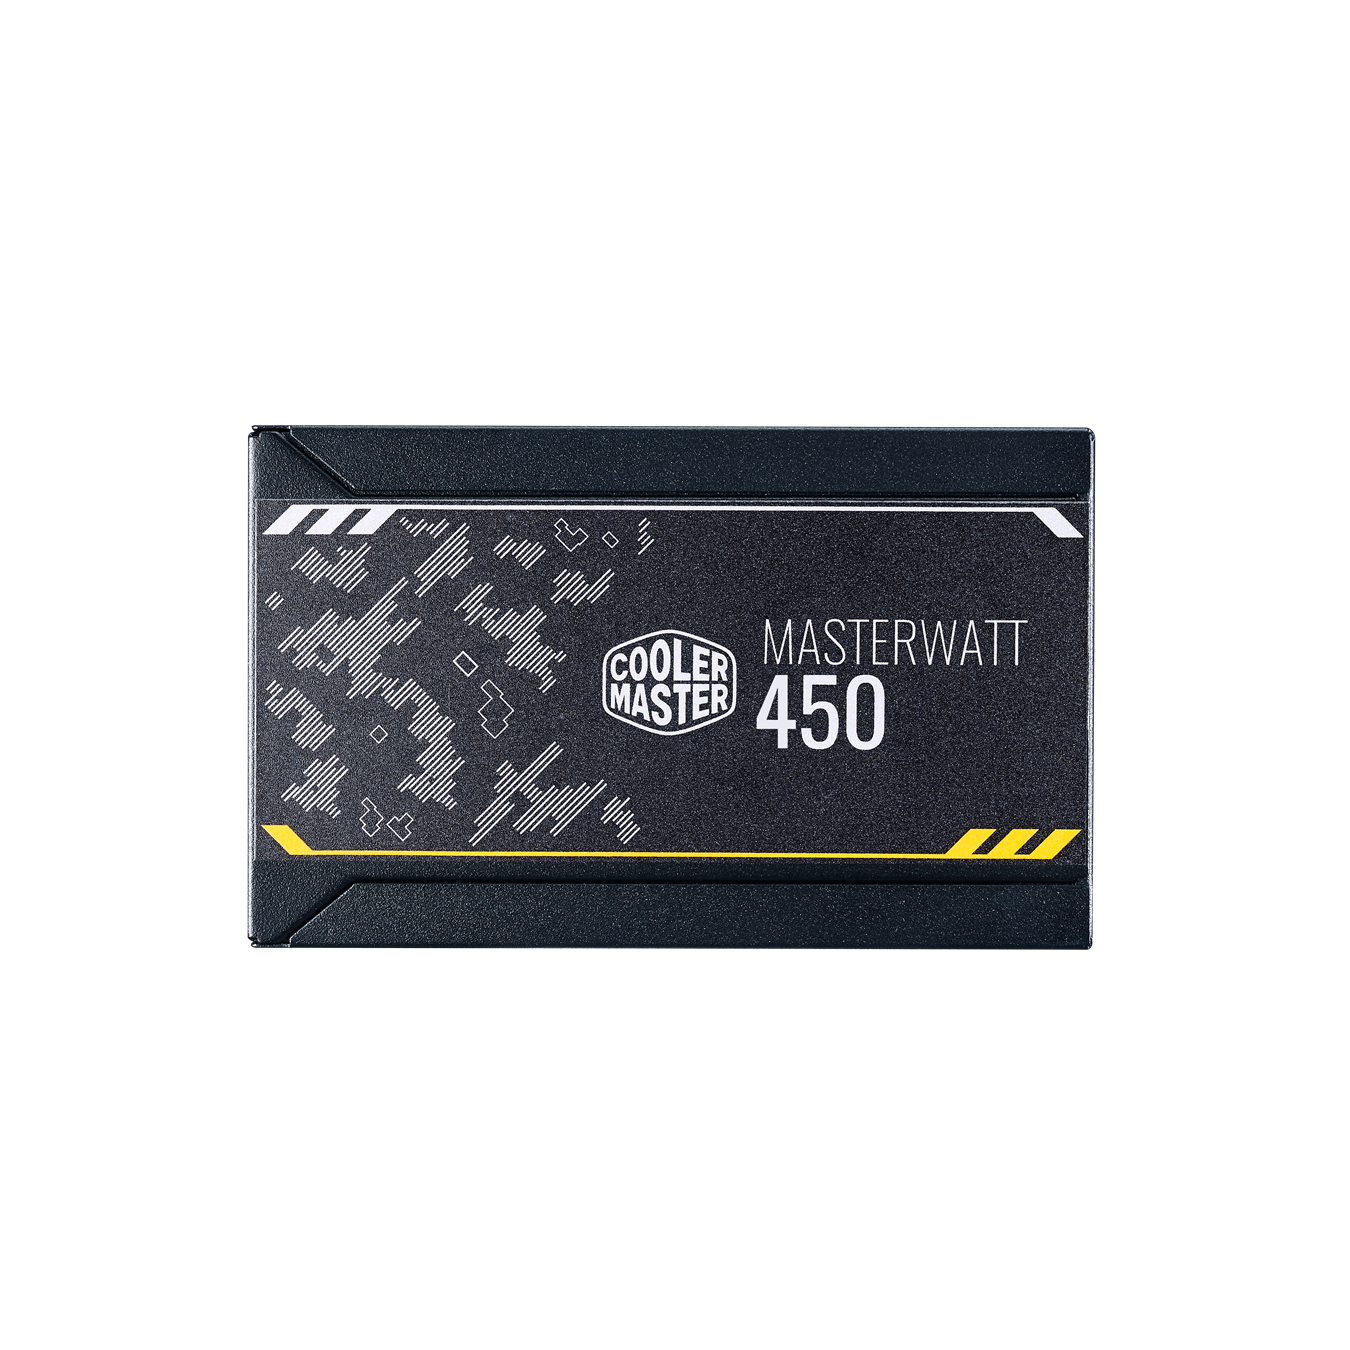 MasterWatt 450 TUF Gaming Edition - product label